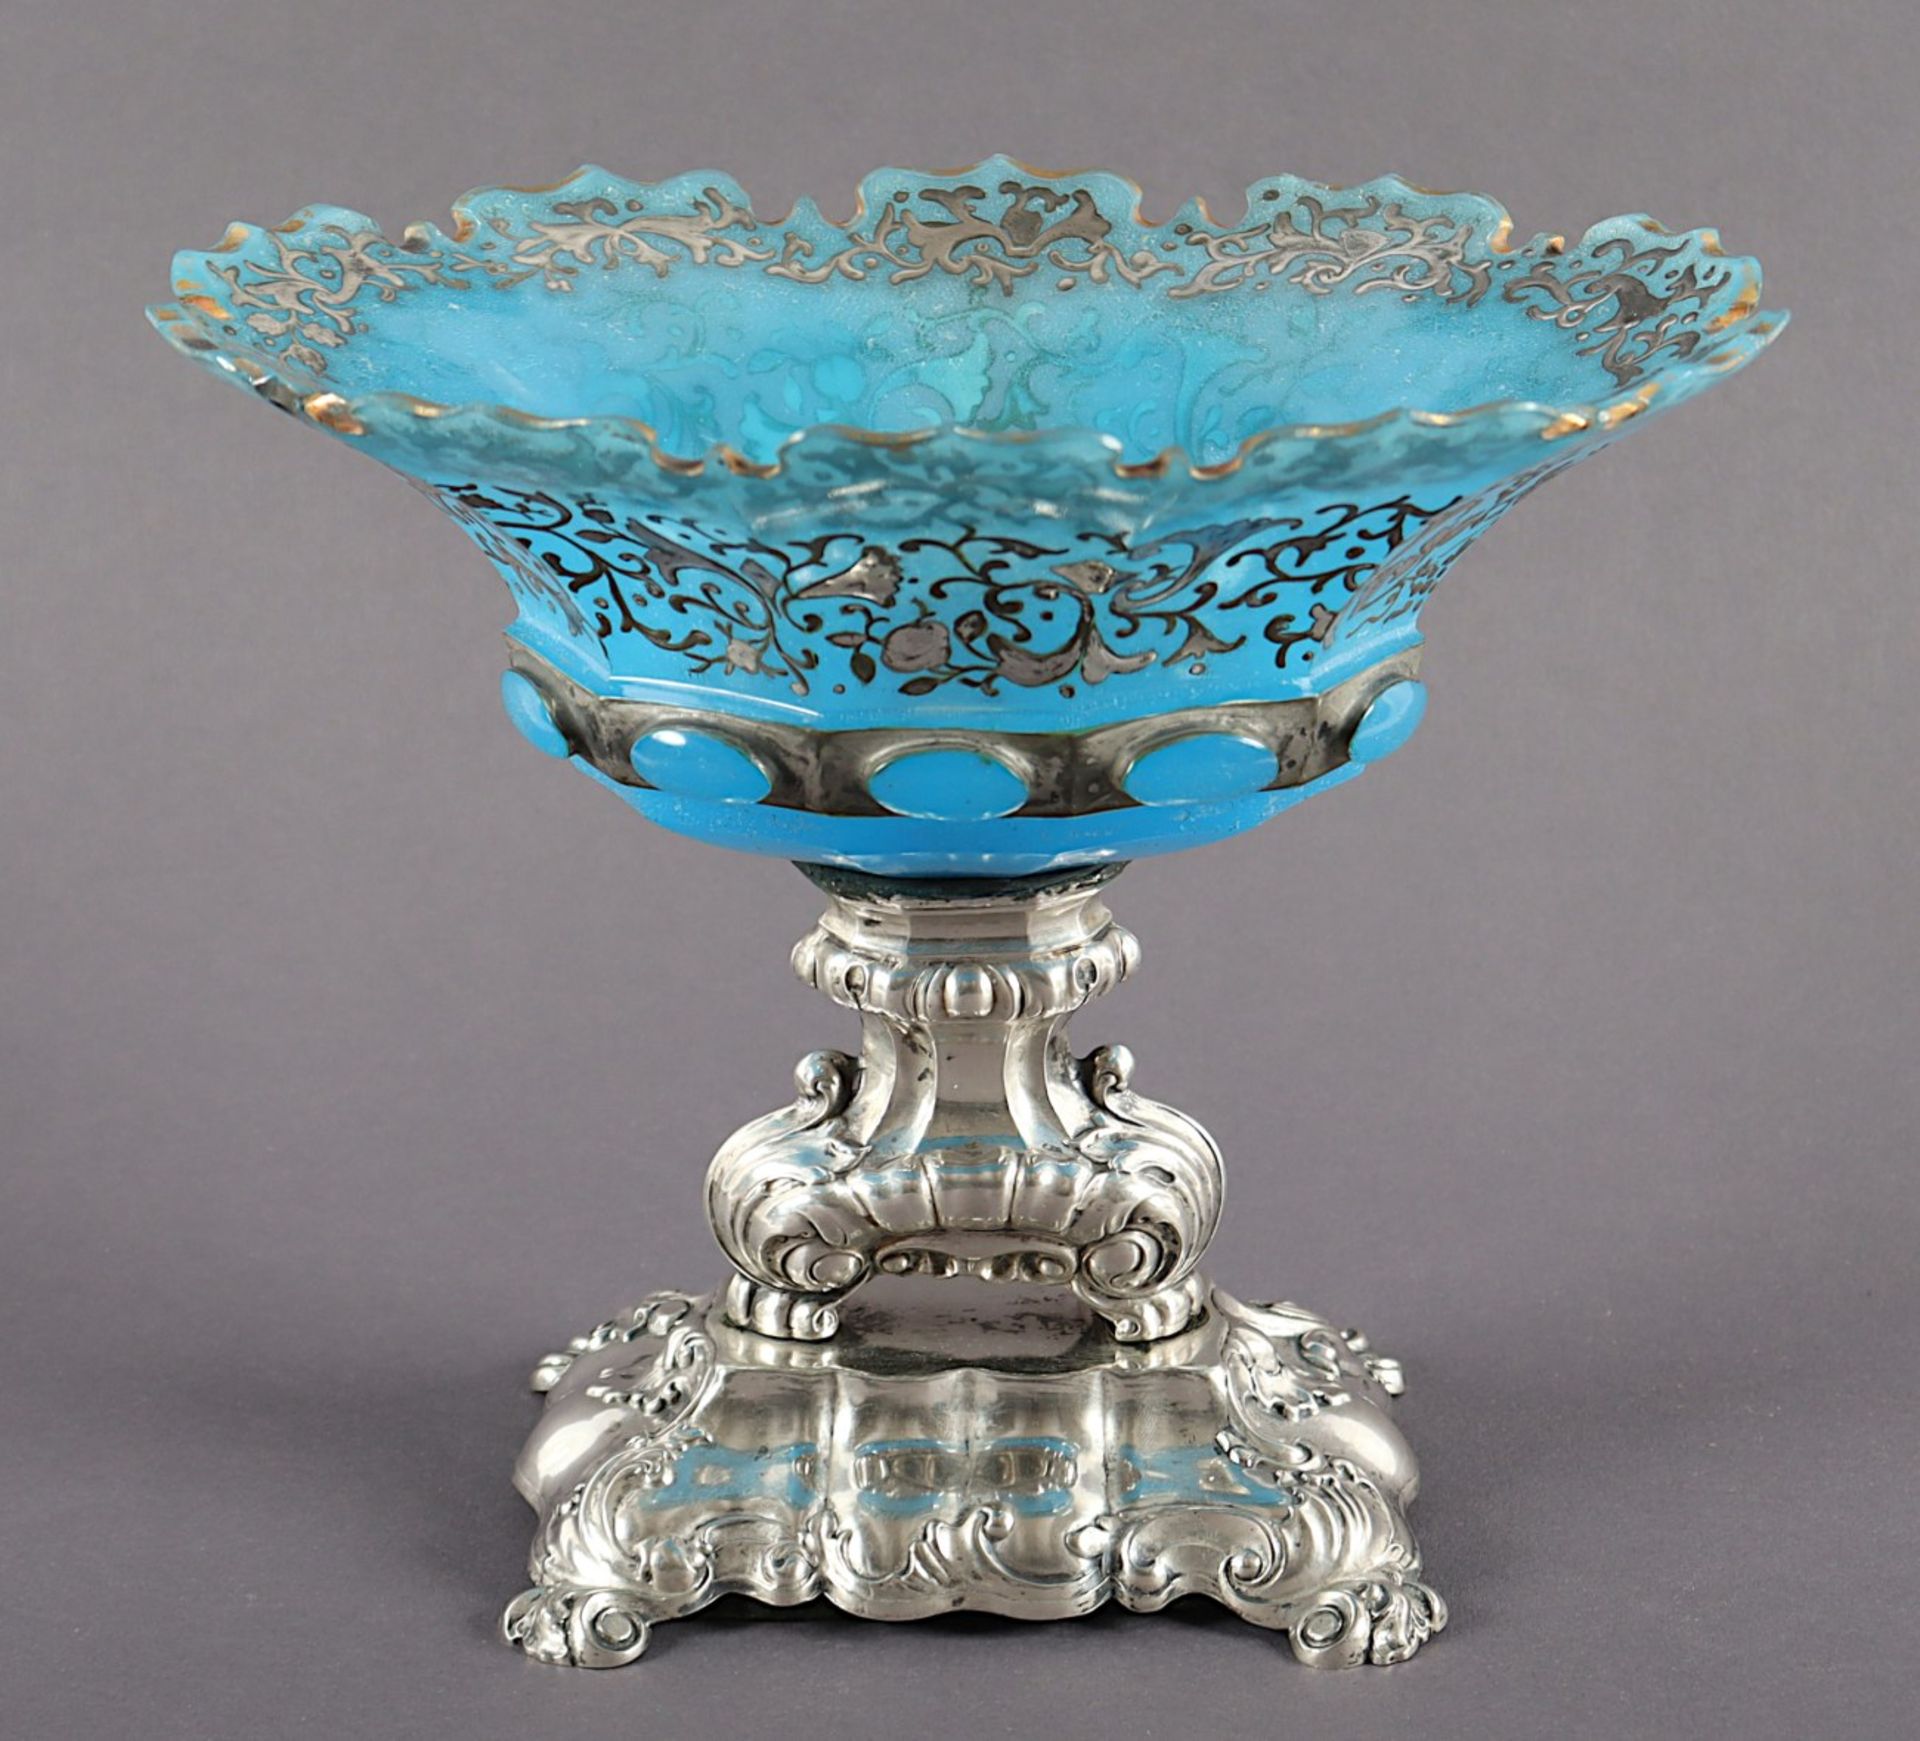 SCHALE, blauopakes Glas, geschliffen, best., Dekor aus Silveroverlay, Fuß aus Silberlegierung, L 21